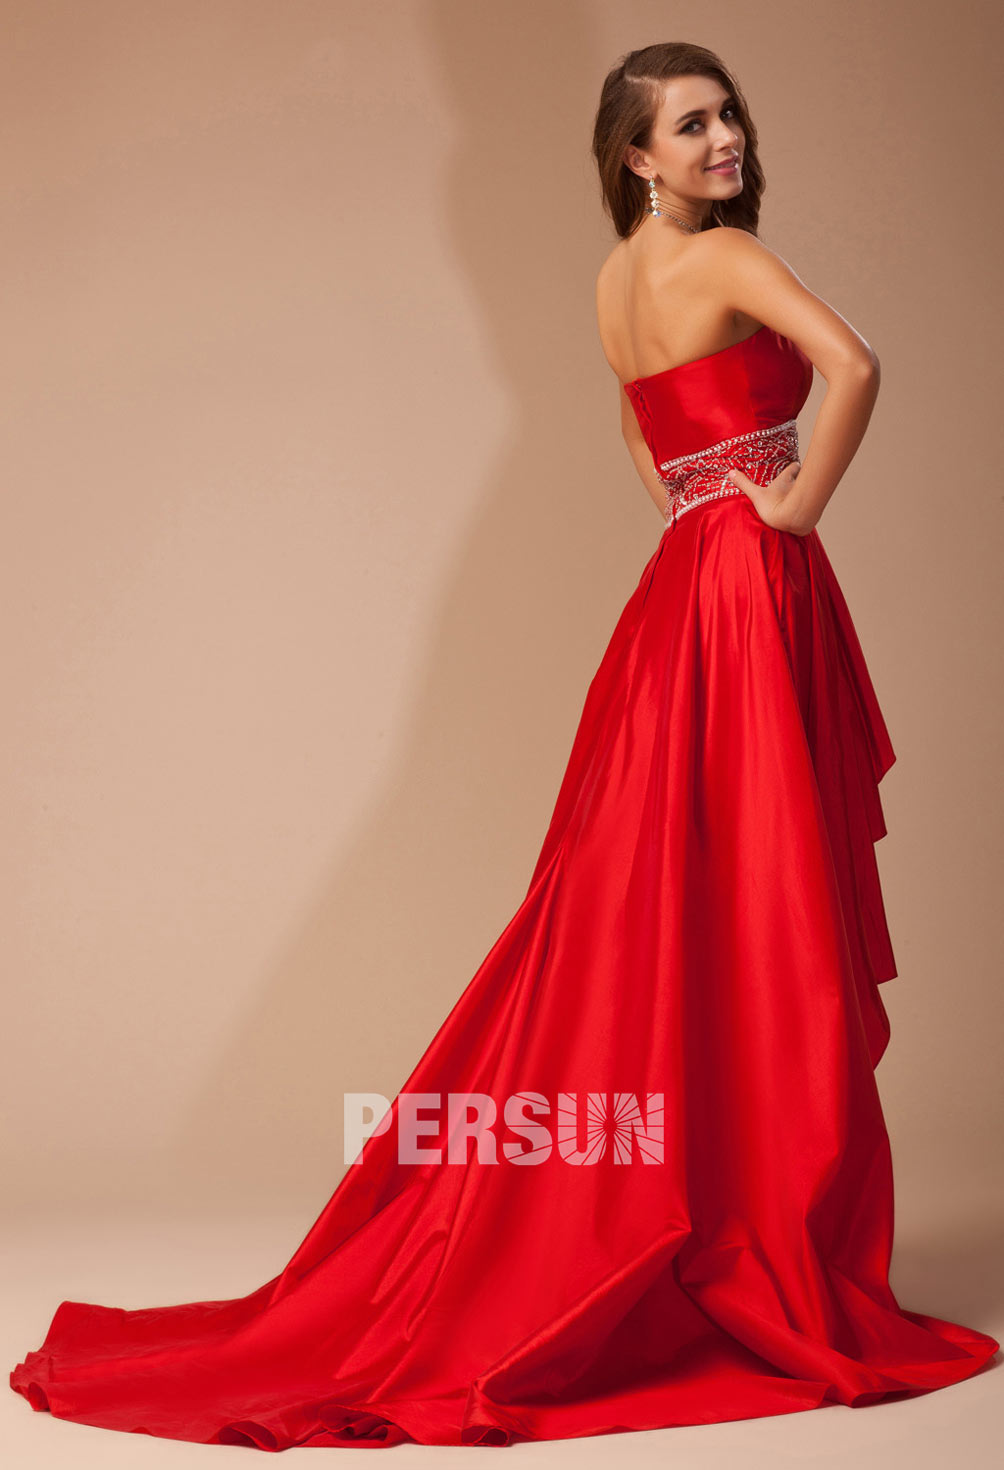 achat robe habillée rouge avec traine à dos nu prix cassé